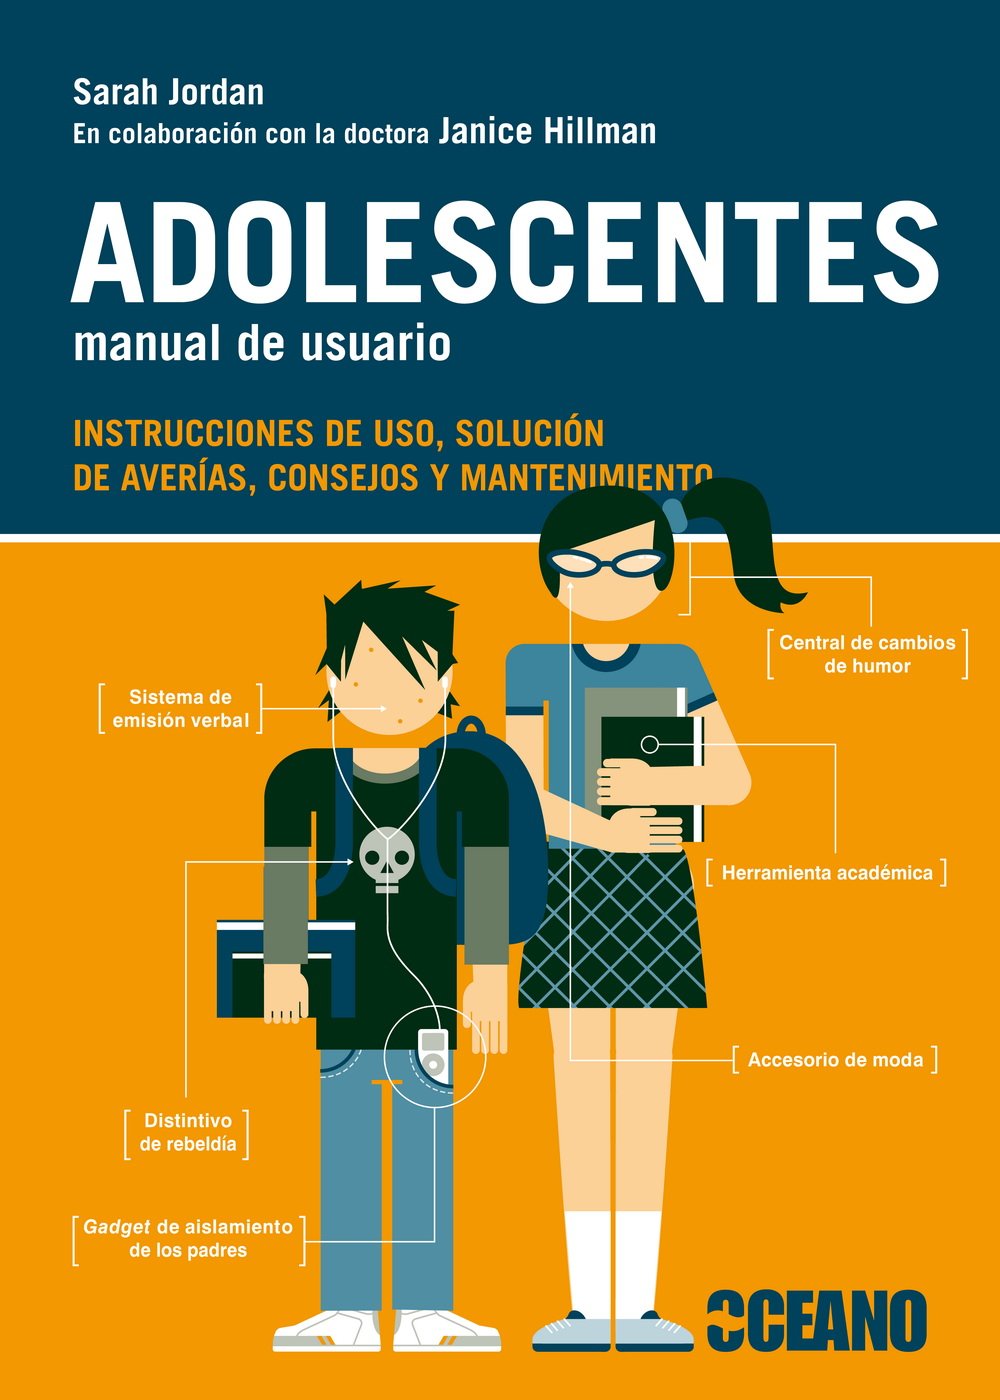 ADOLESCENTES MANUAL DE USUARIO